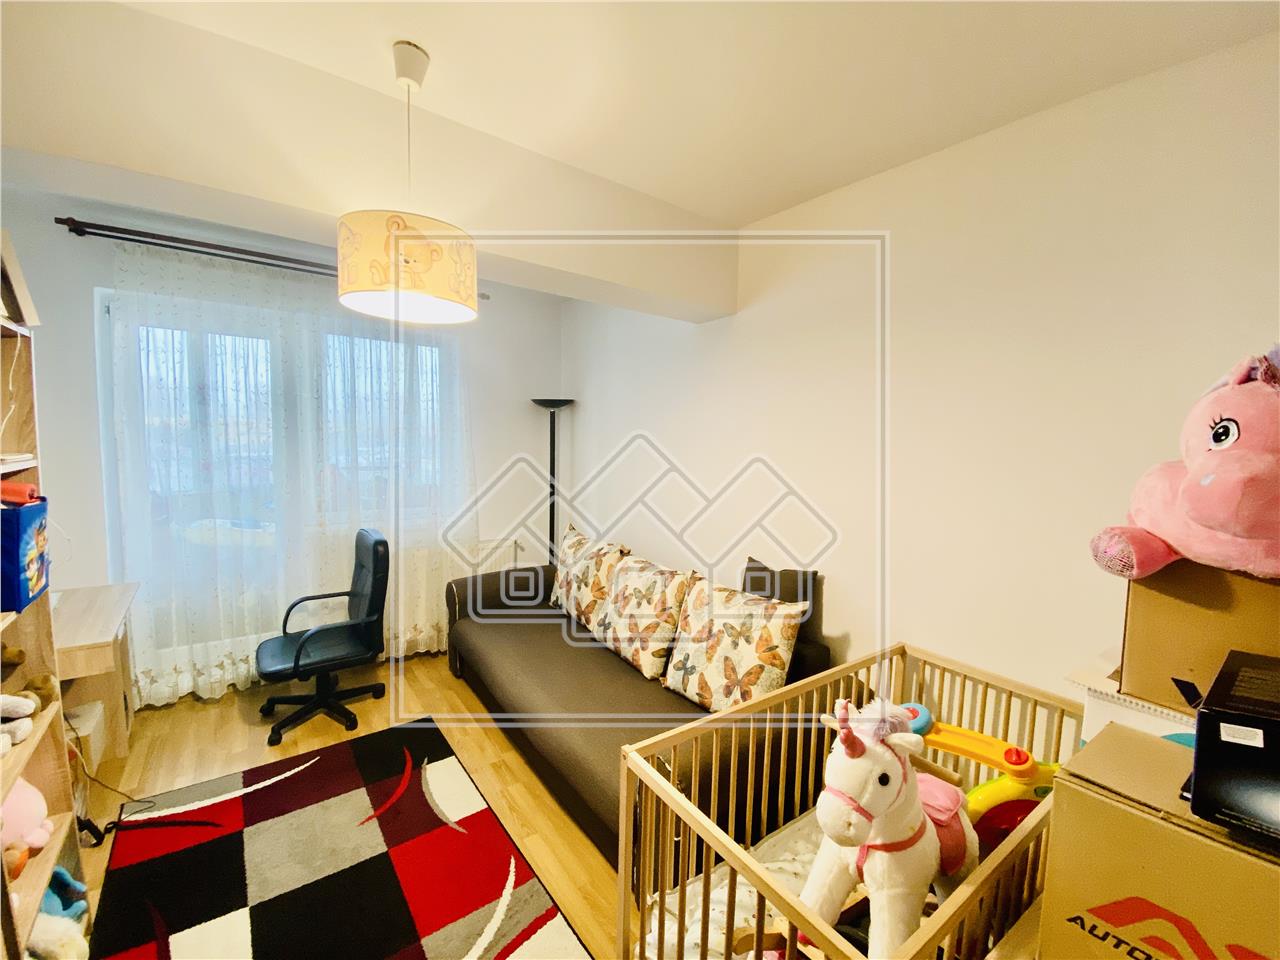 Apartament de vanzare in Sibiu - 3 camere si balcon inchis - Turnisor